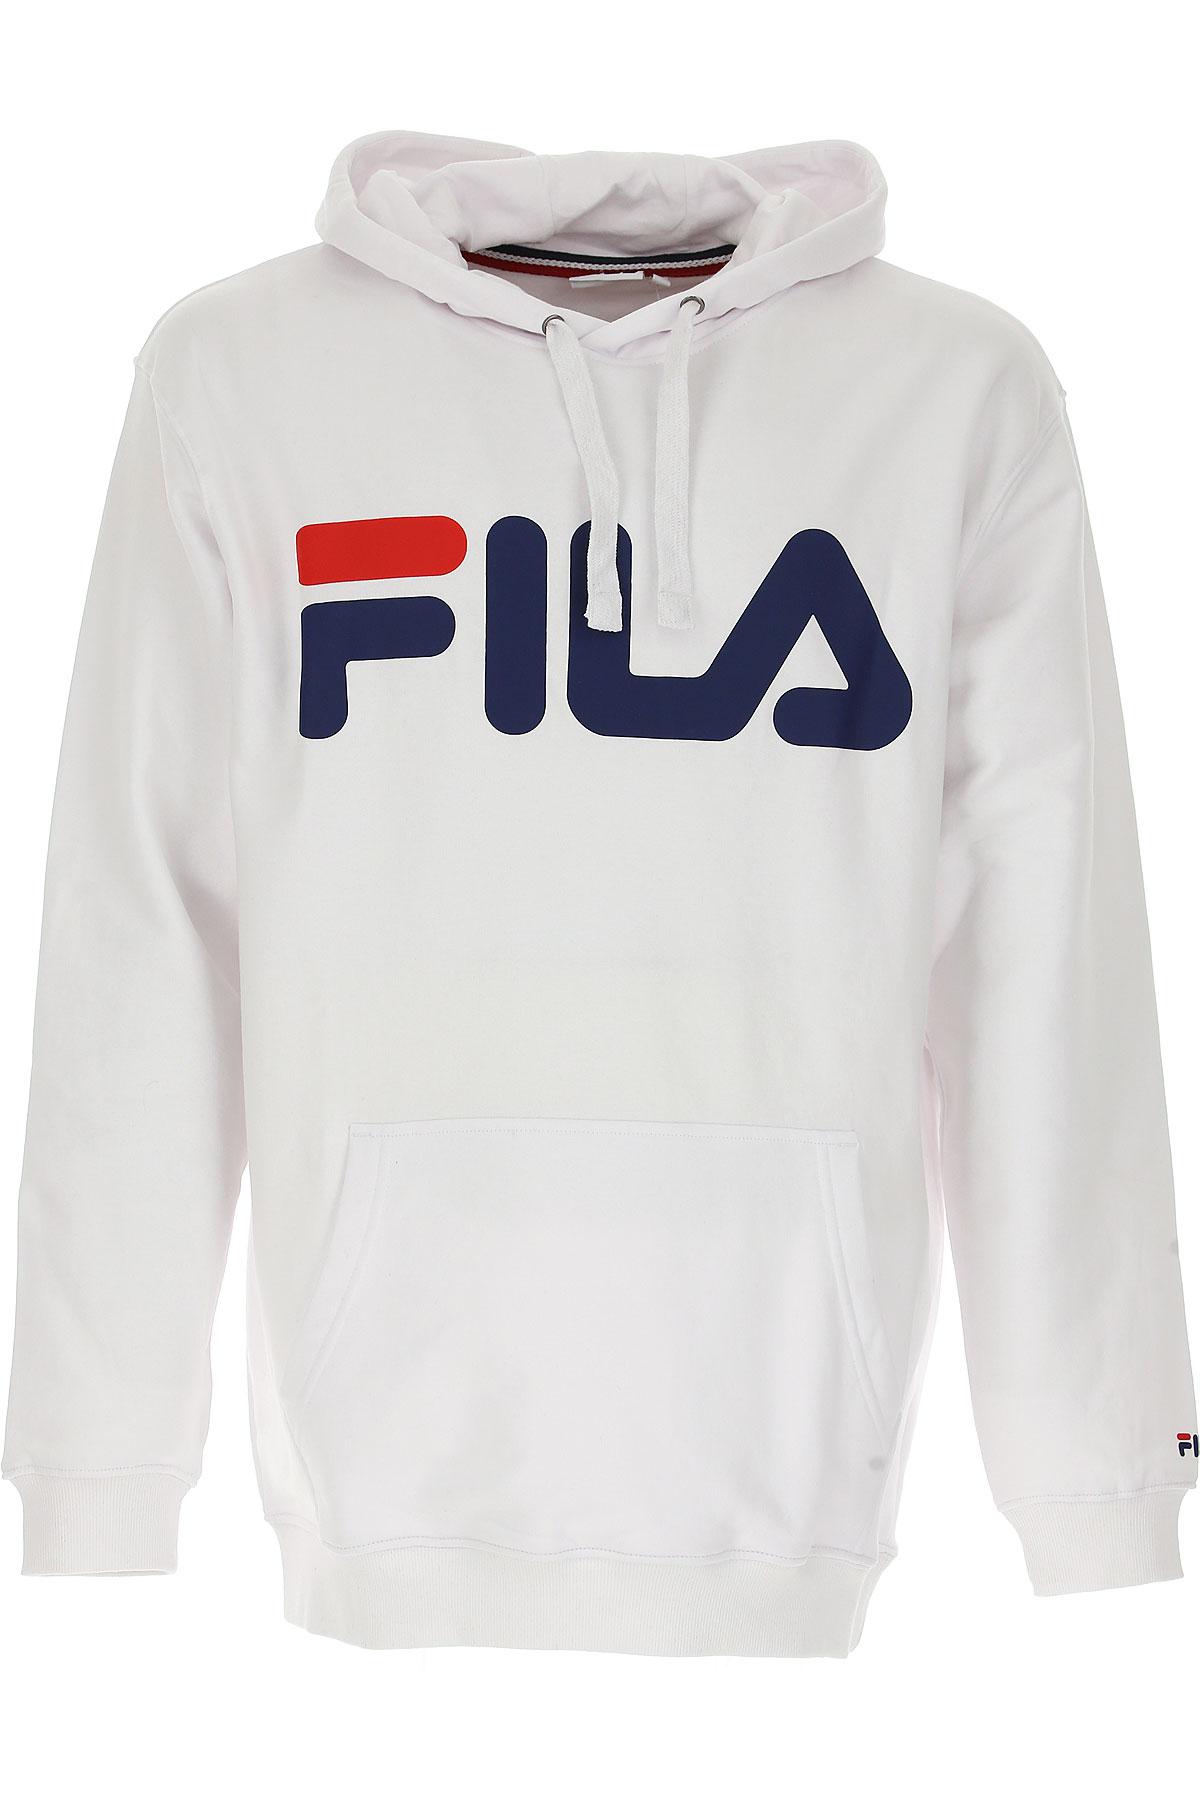 Fila Sweatshirt in White/Red/Black (White) for Men - Lyst